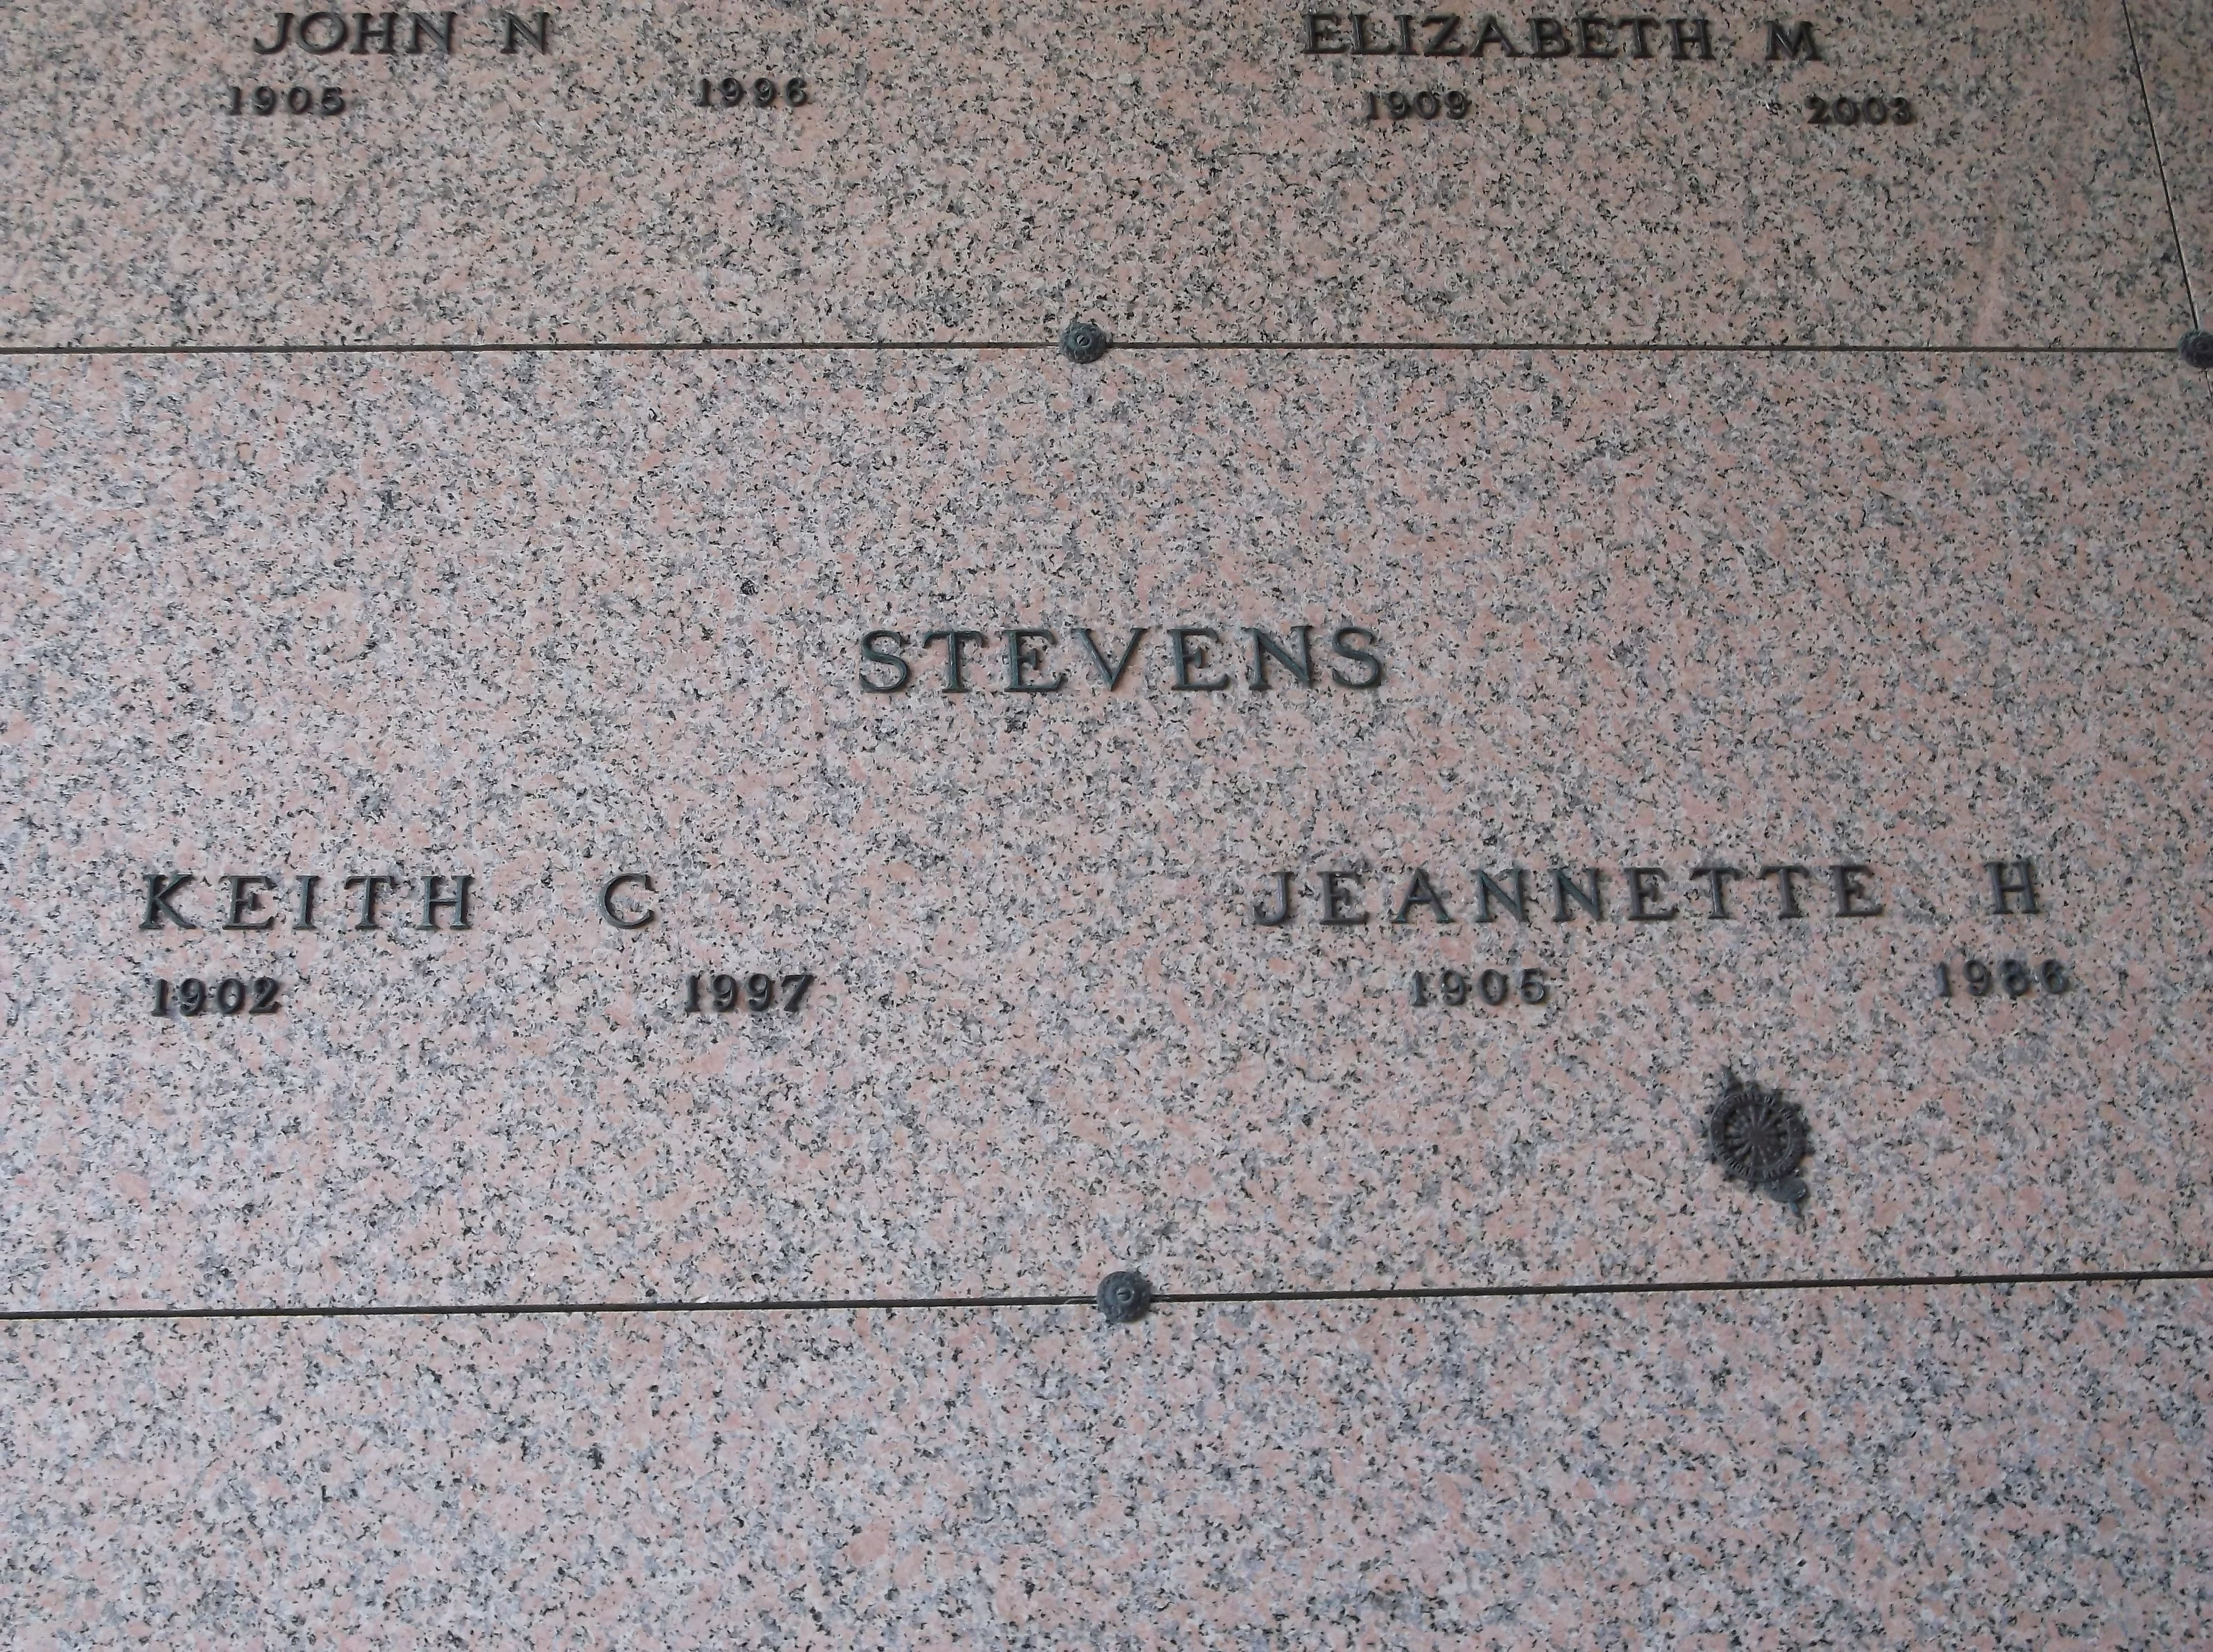 Jeannette H Stevens